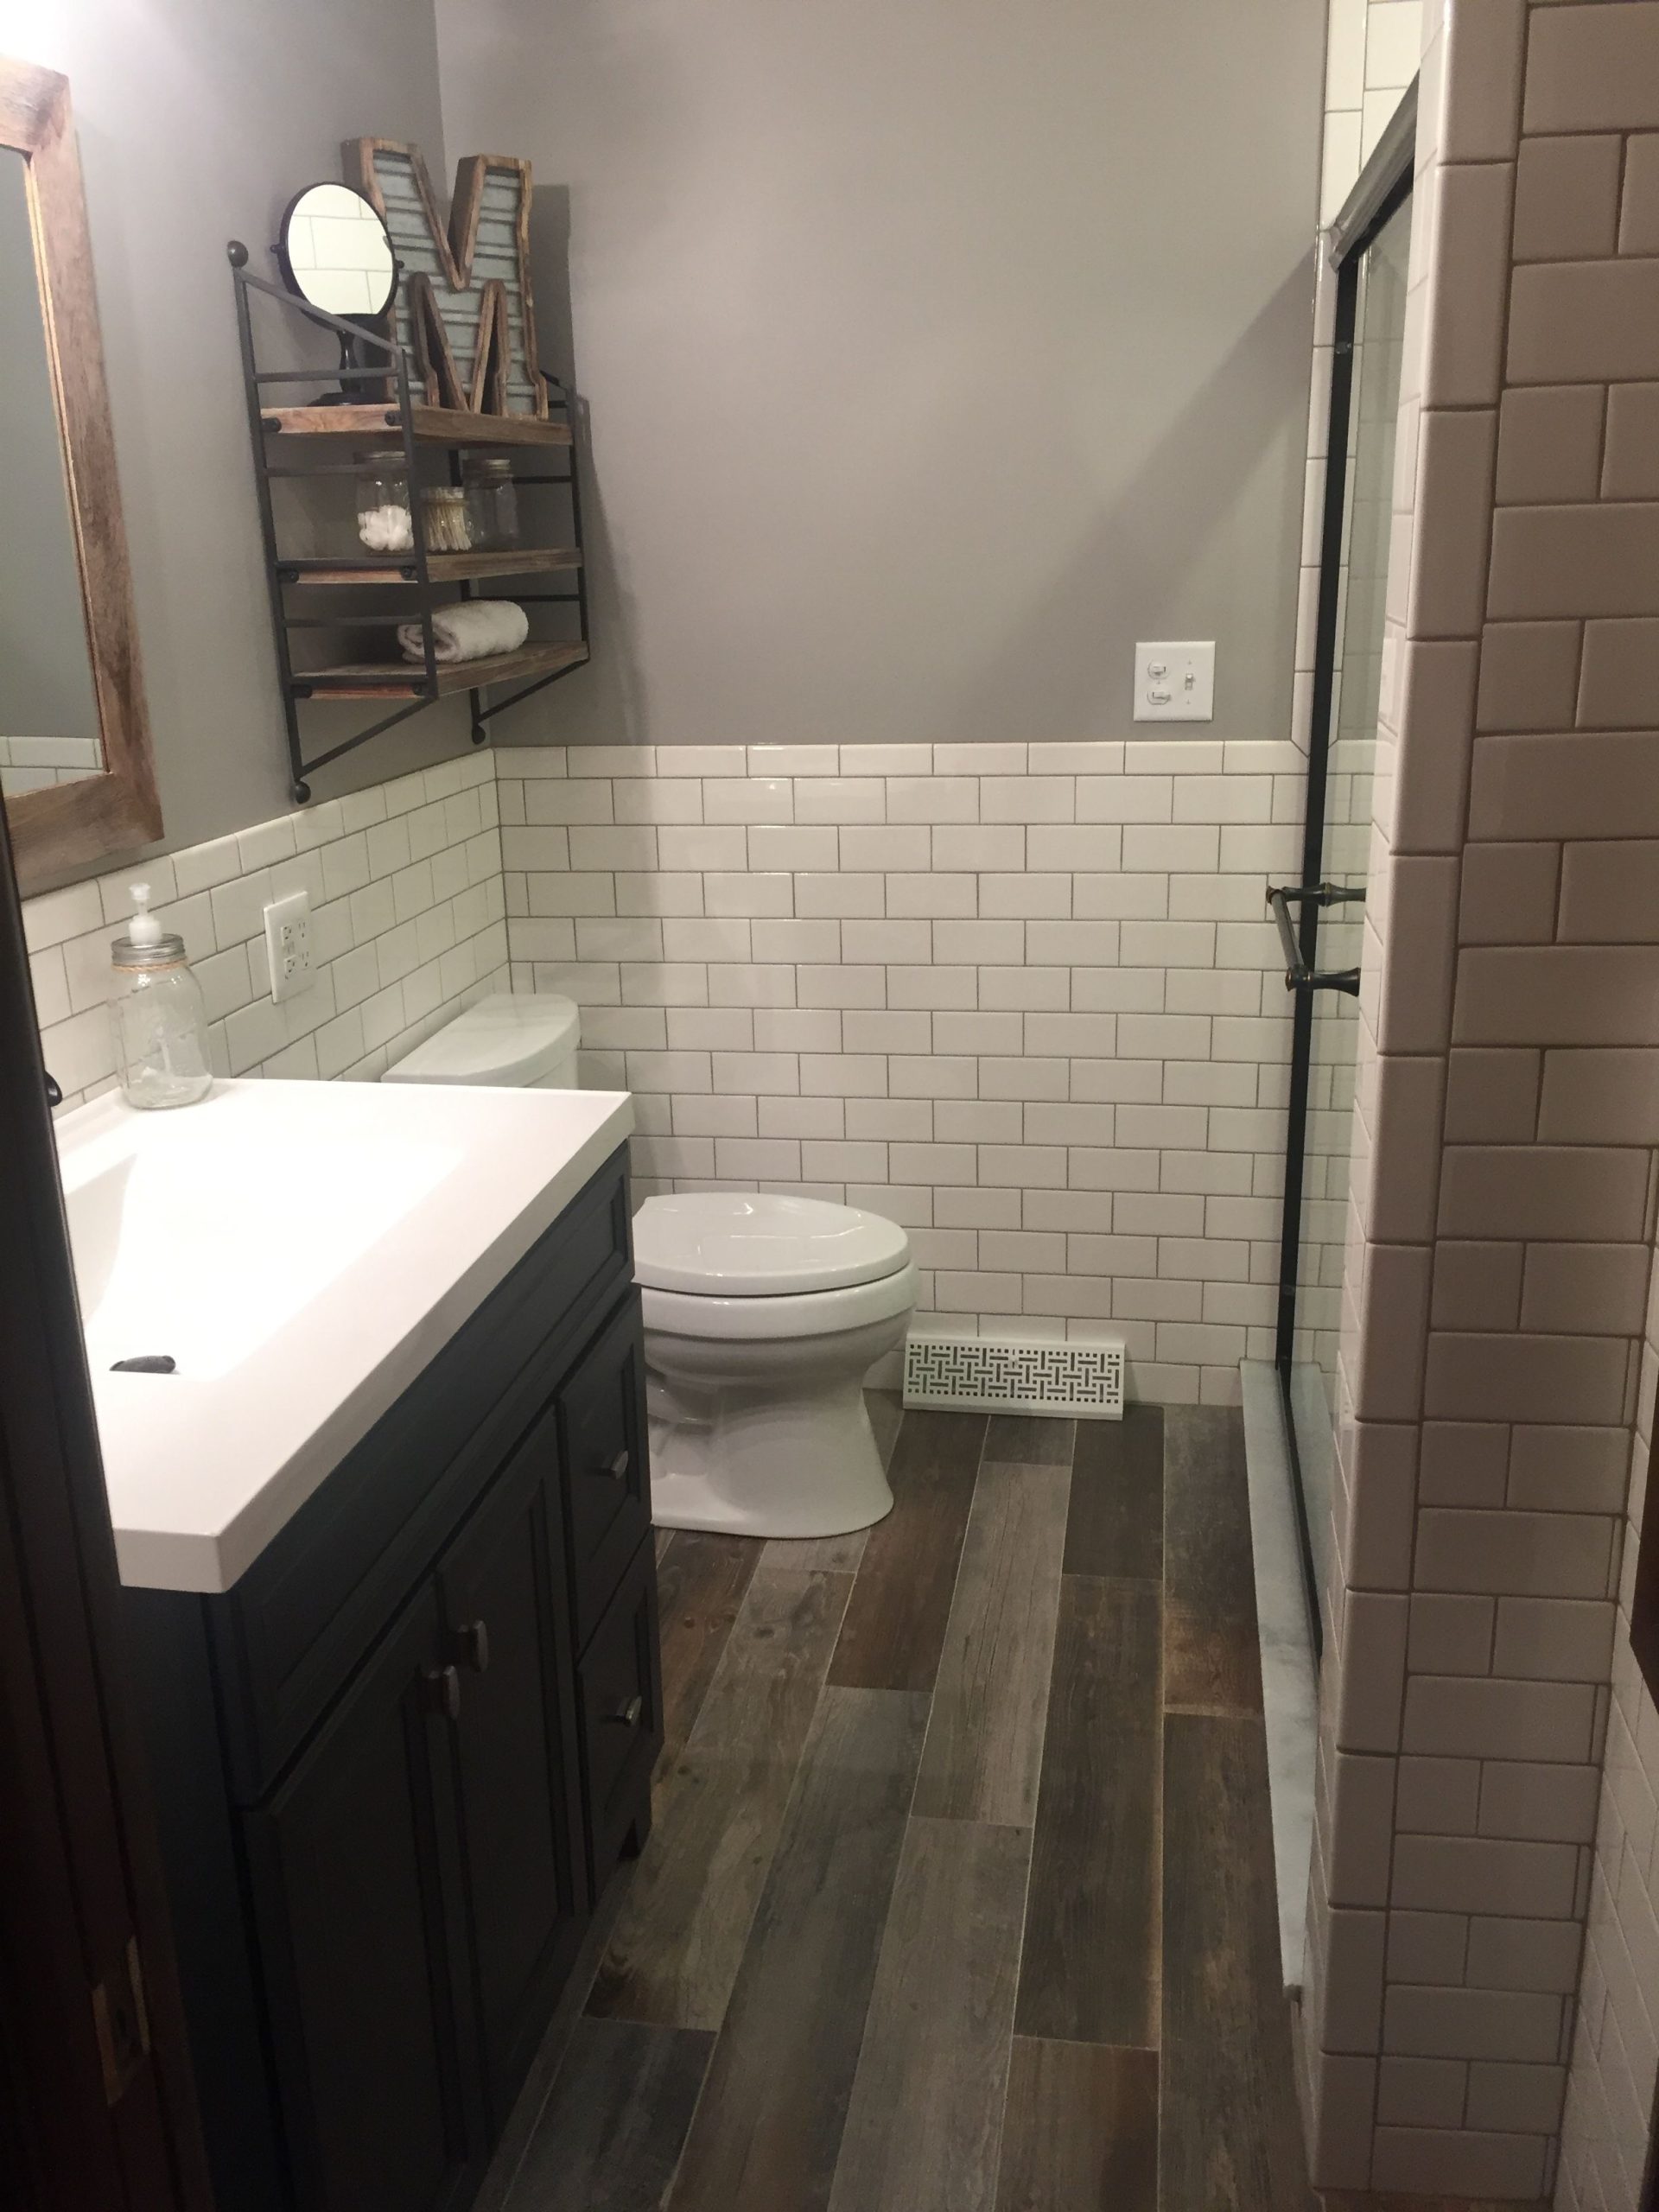 banheiro pequeno com piso de madeira